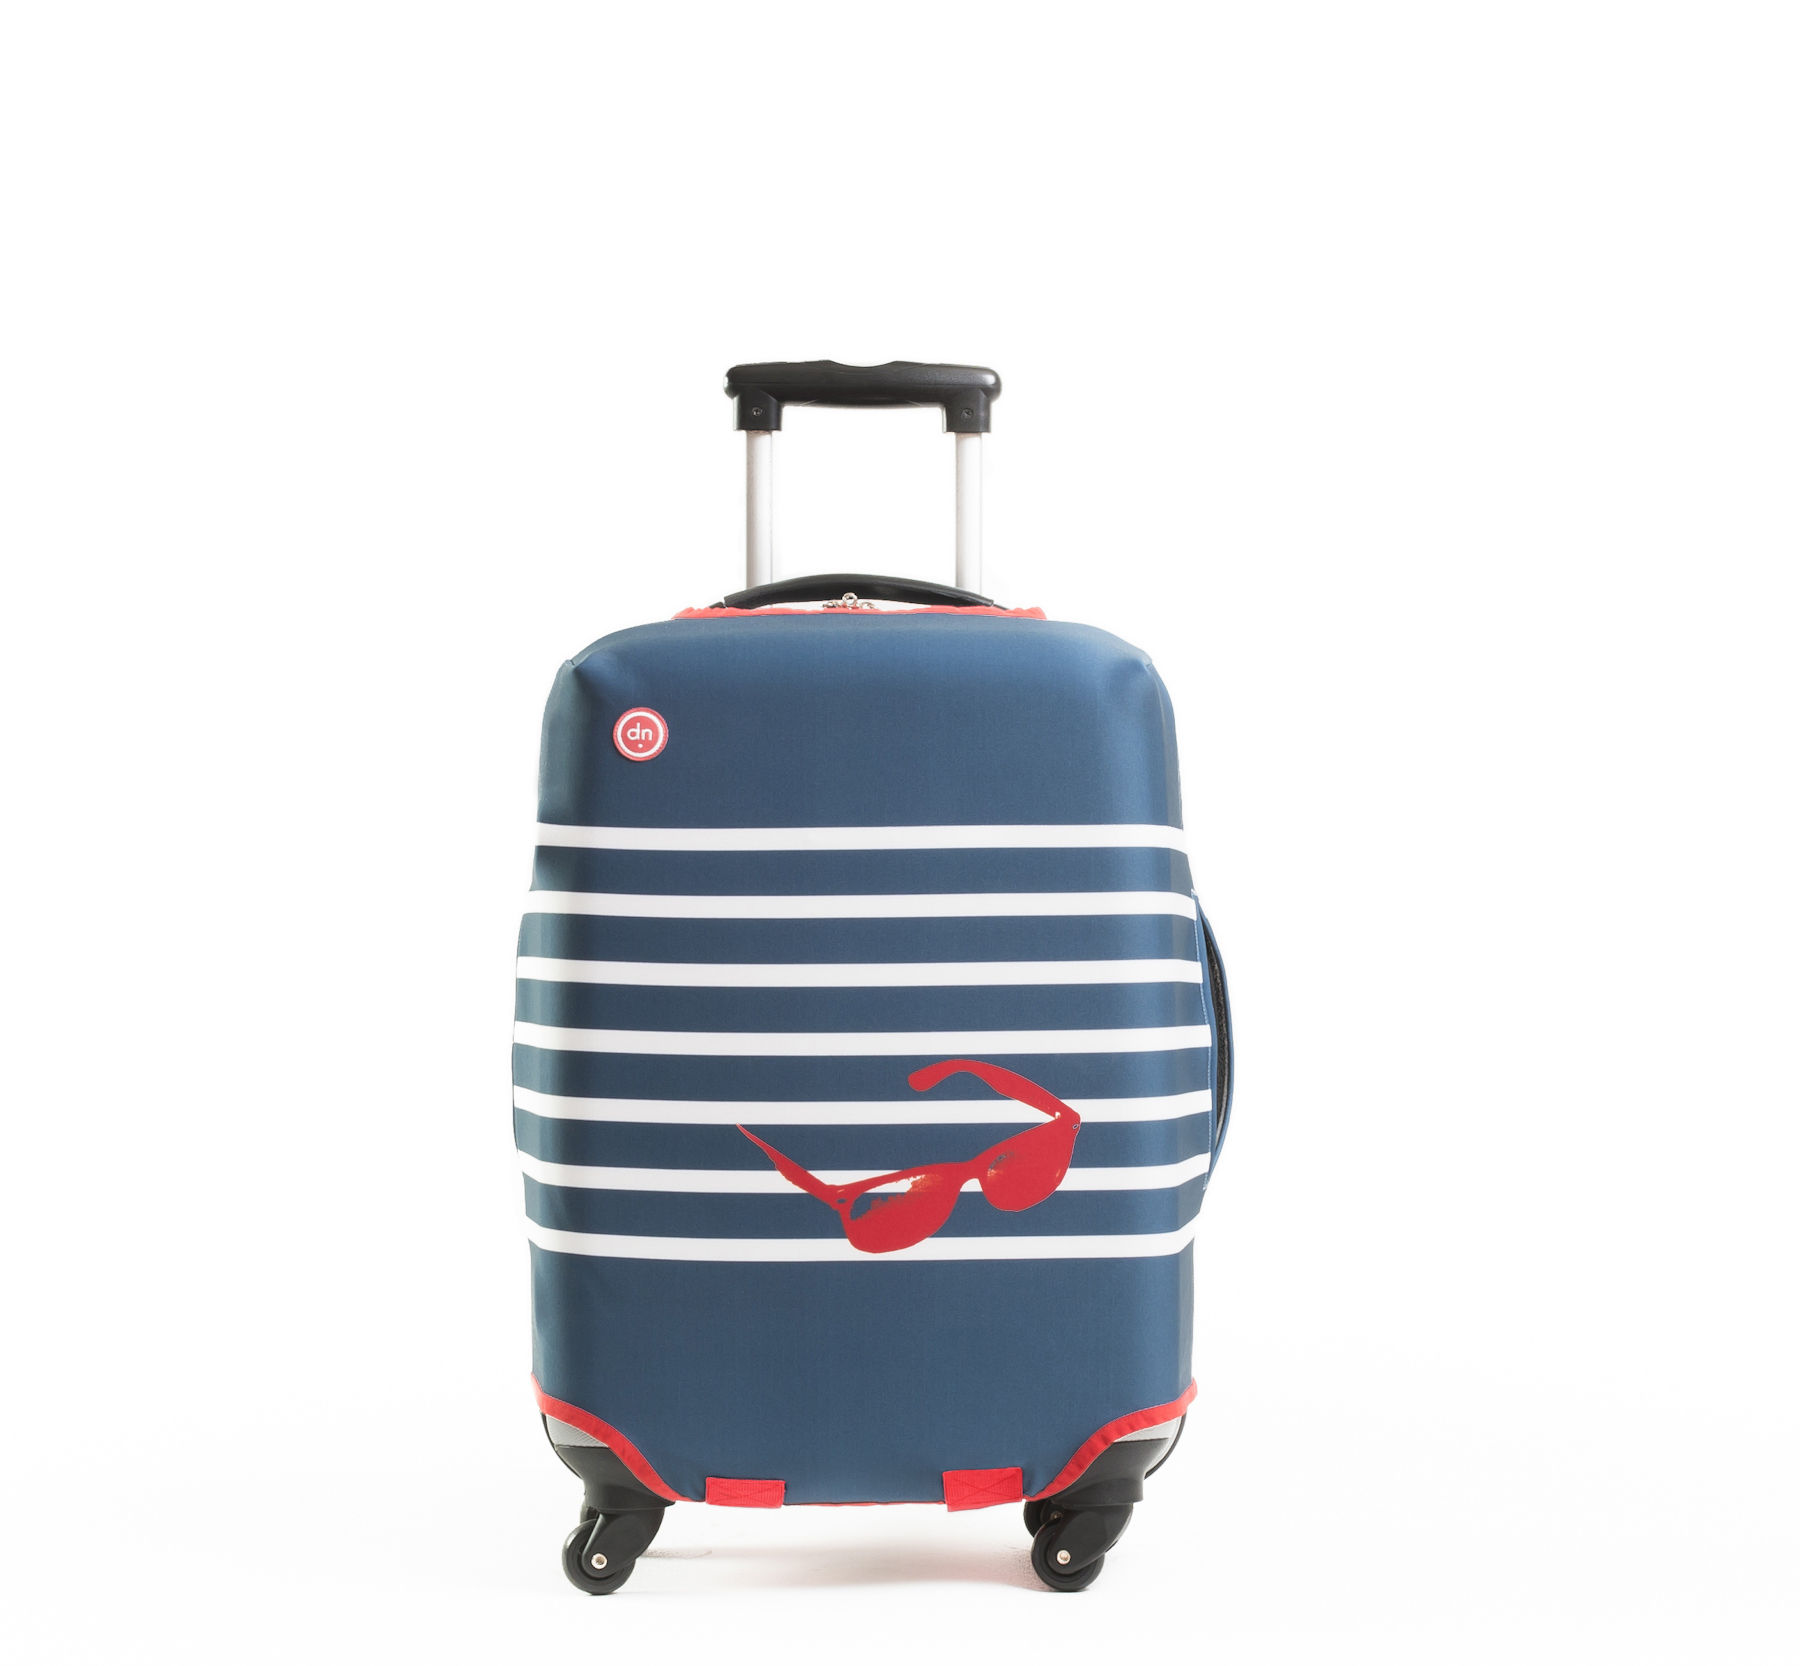 Housse de valise European couture - taille M / pour une valise de H 60 à 70 cm Taille M - Bleu ...